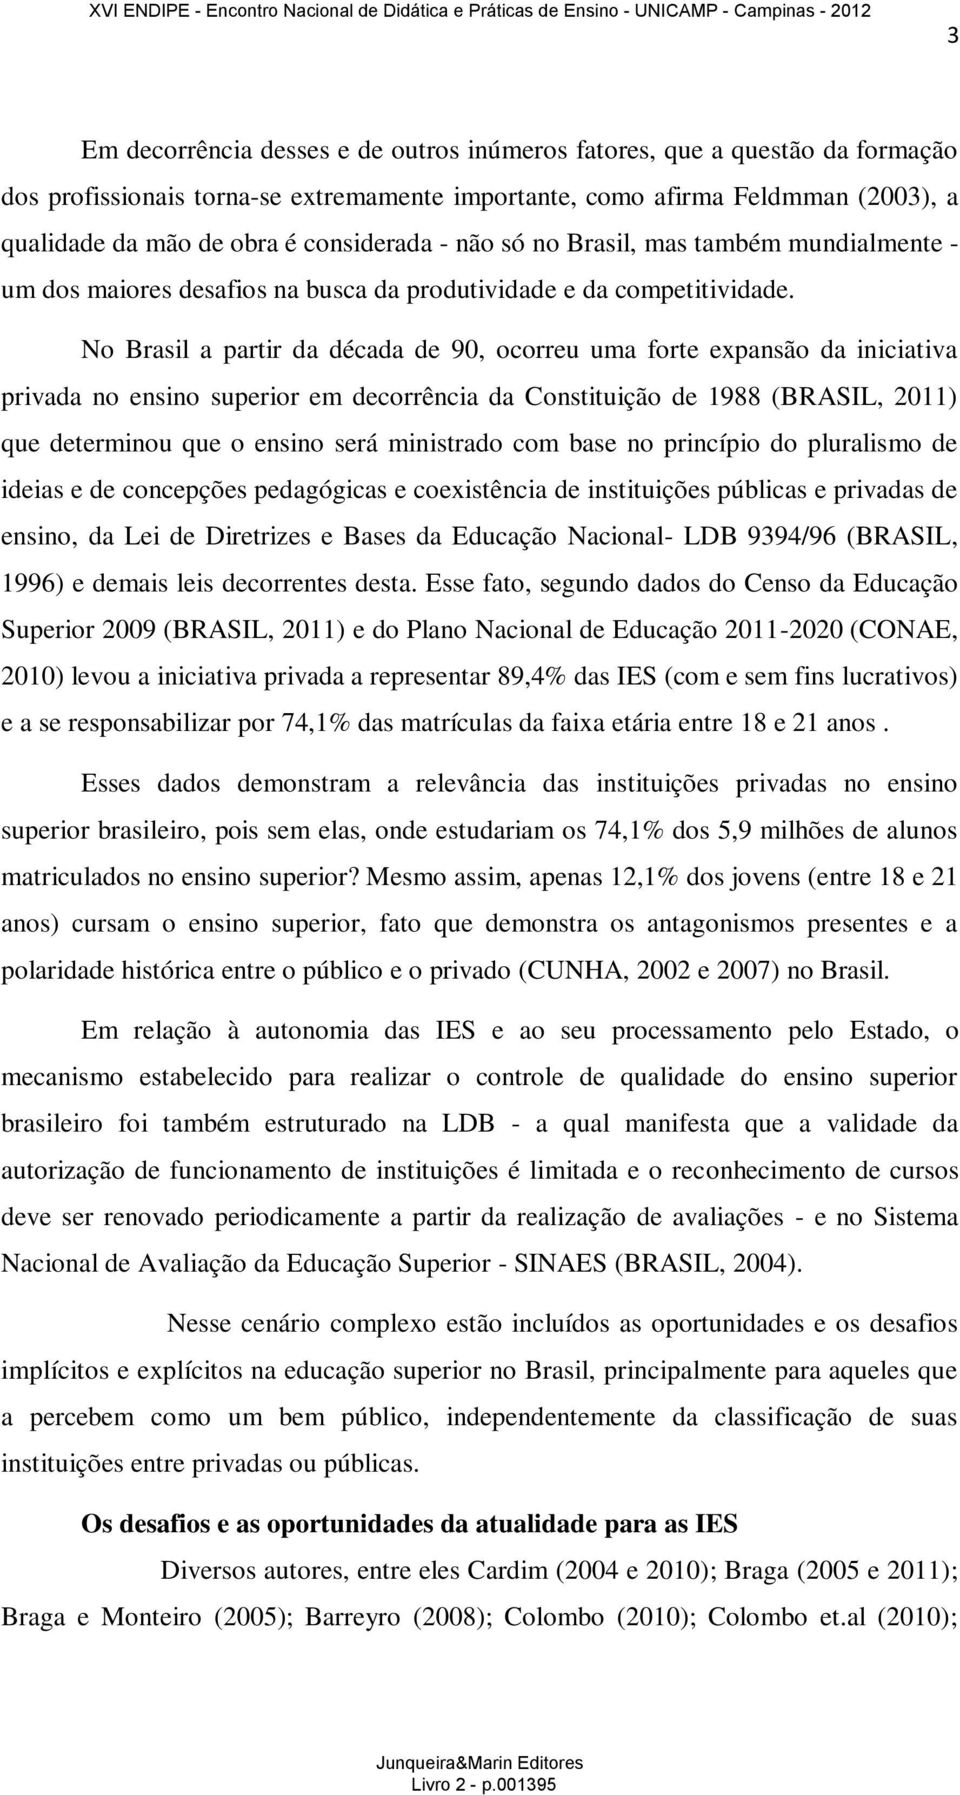 No Brasil a partir da década de 90, ocorreu uma forte expansão da iniciativa privada no ensino superior em decorrência da Constituição de 1988 (BRASIL, 2011) que determinou que o ensino será